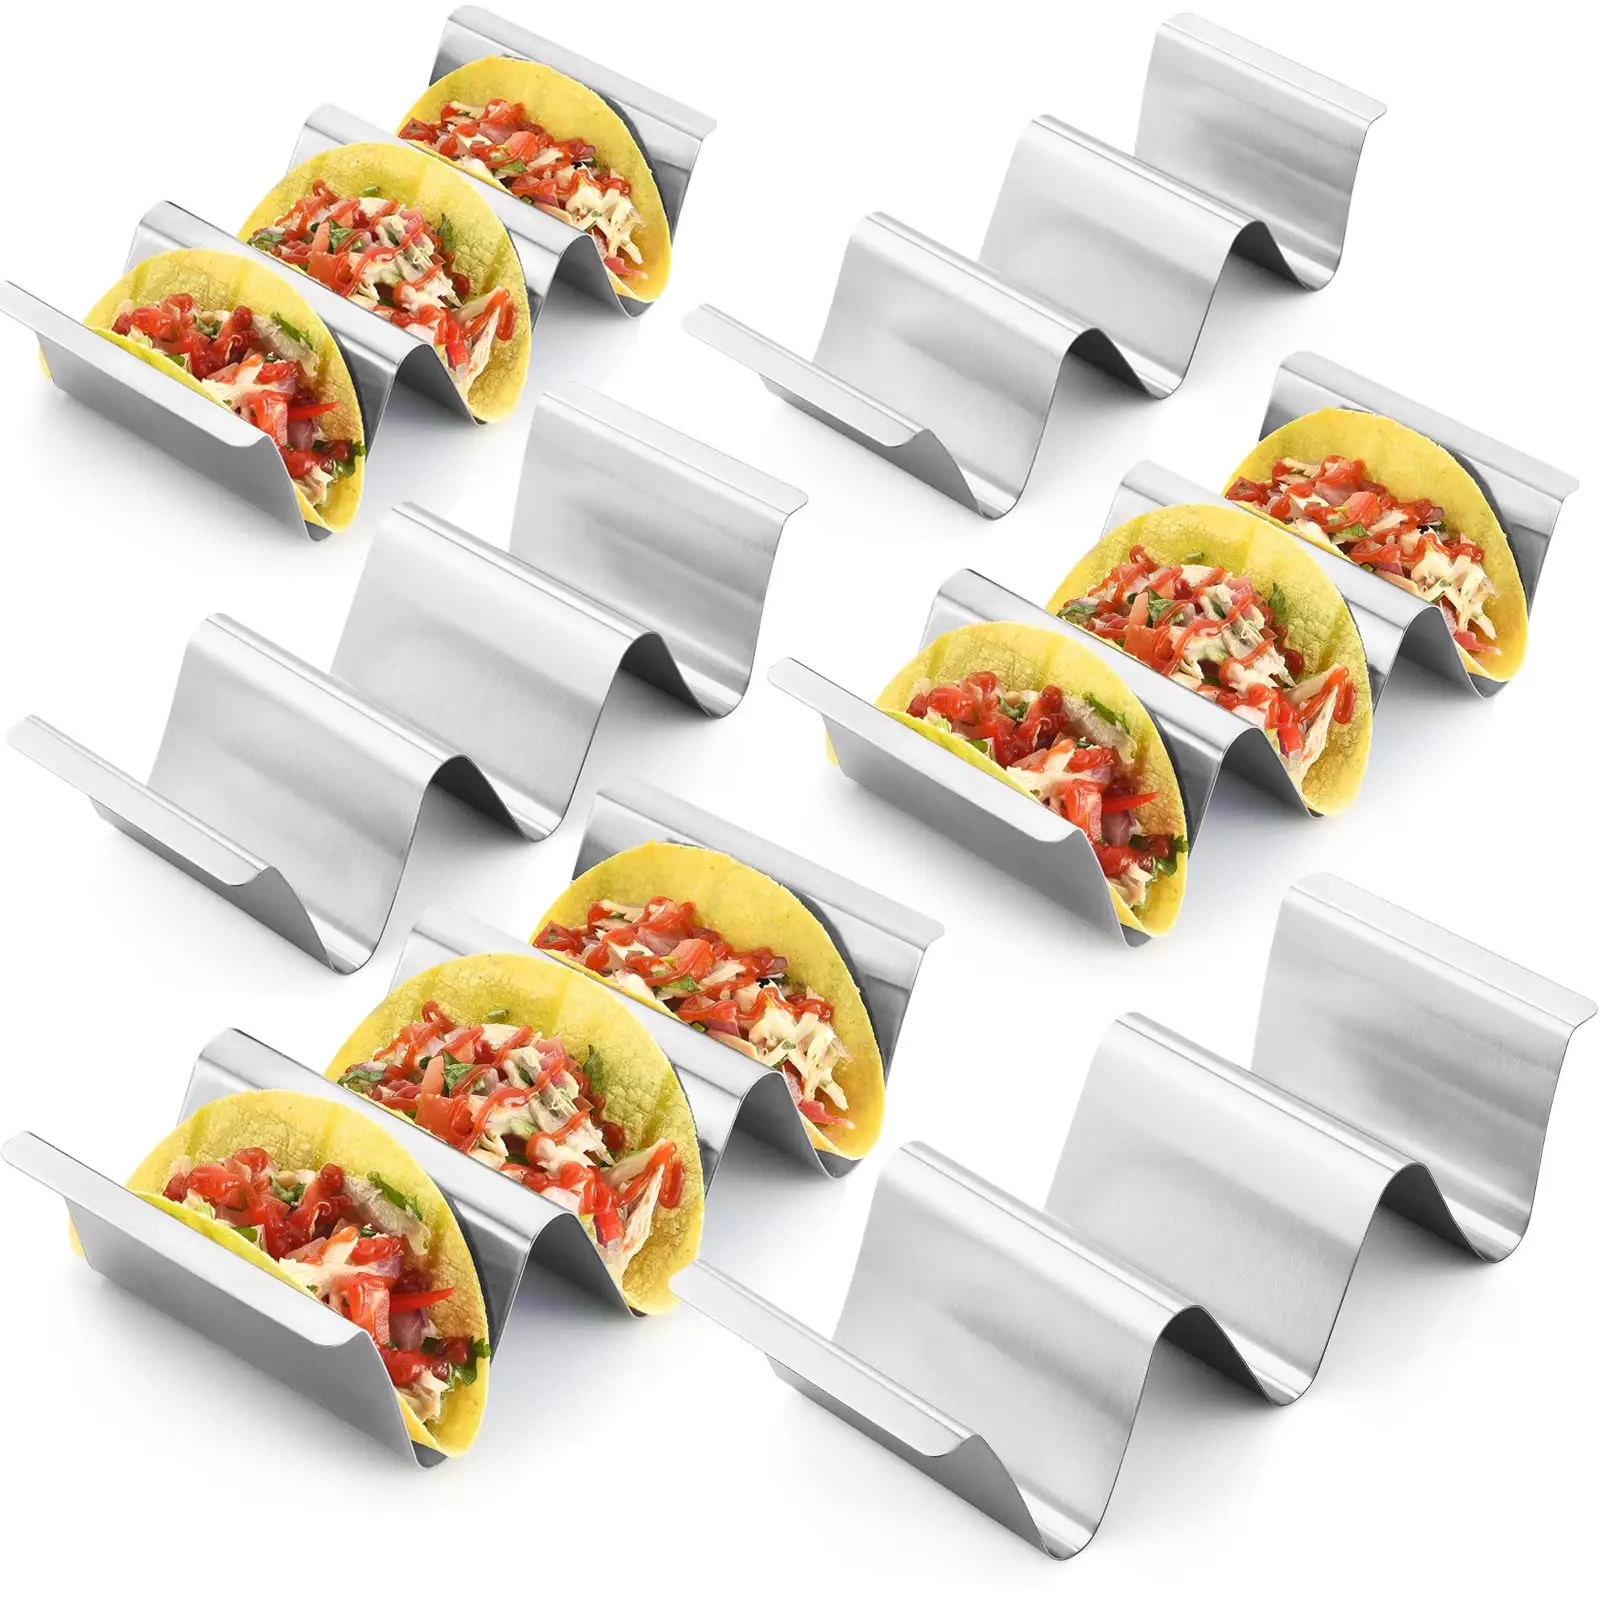 Taco Holder Stand Set mit 6 Edelstahl Taco Tray Stilvolle Taco Shell Halter Grill und spülmaschinen fest